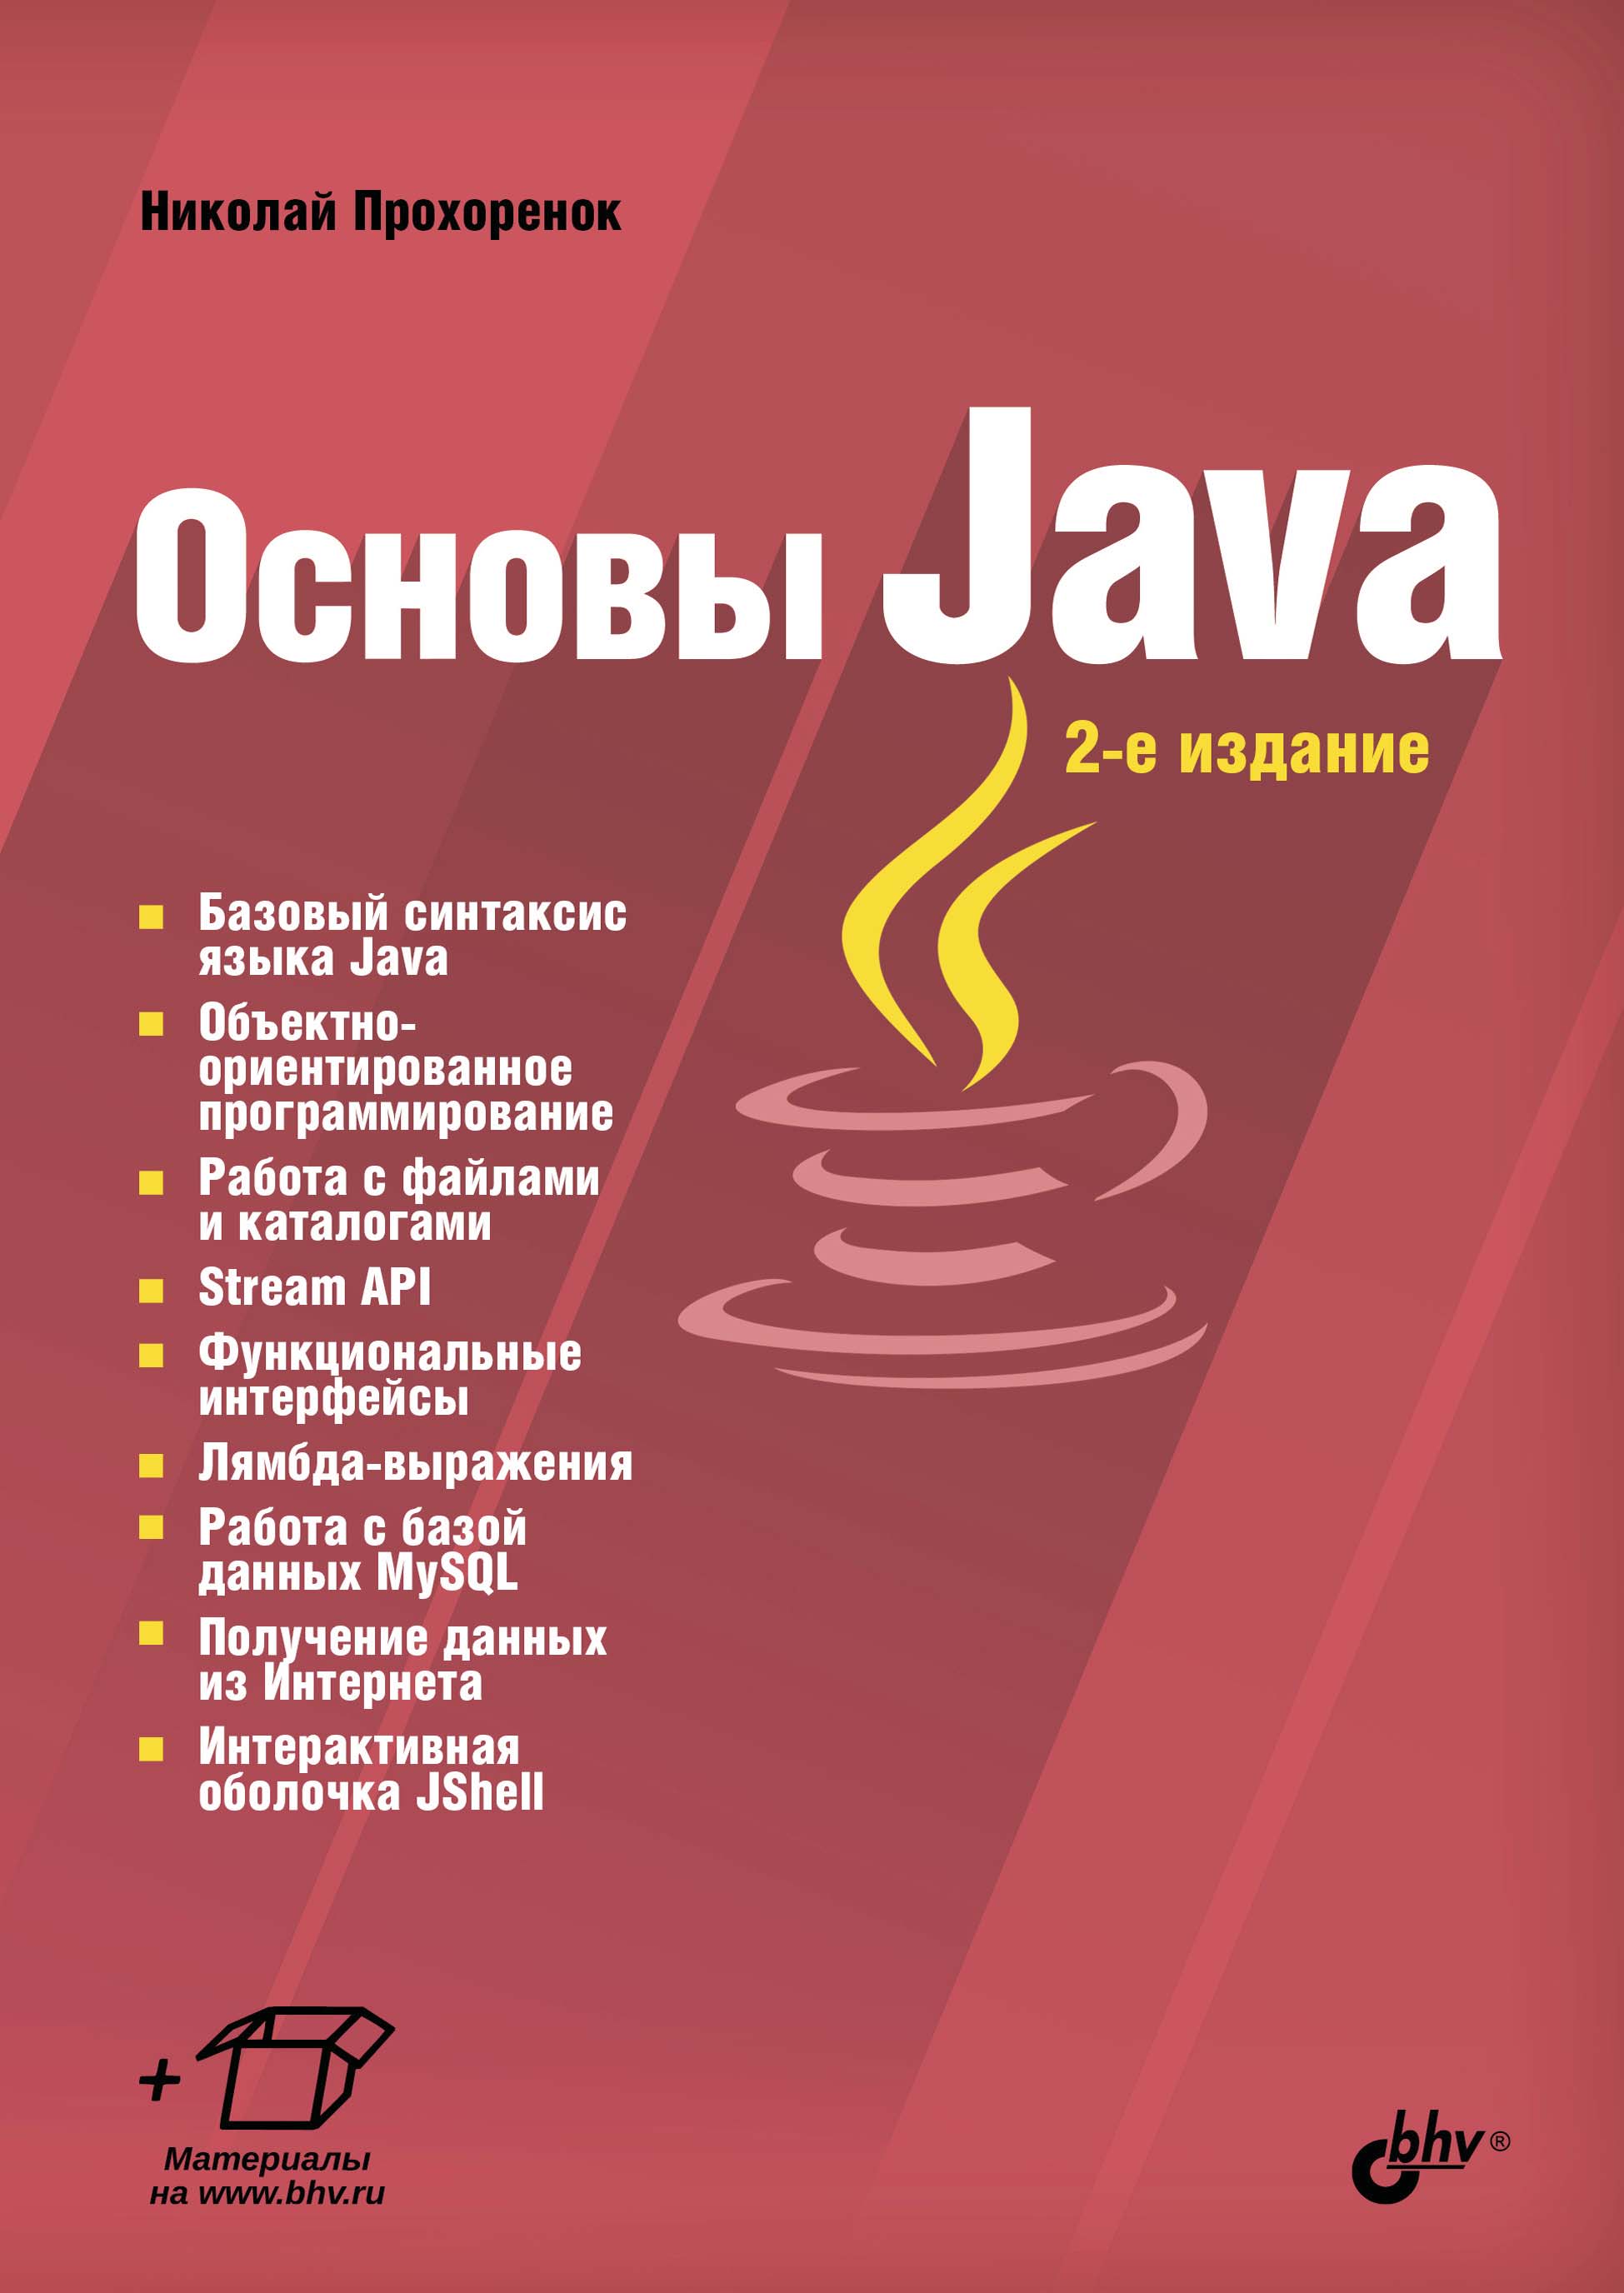 Книга  Основы Java созданная Николай Прохоренок может относится к жанру программирование, руководства. Стоимость электронной книги Основы Java с идентификатором 39288481 составляет 449.00 руб.